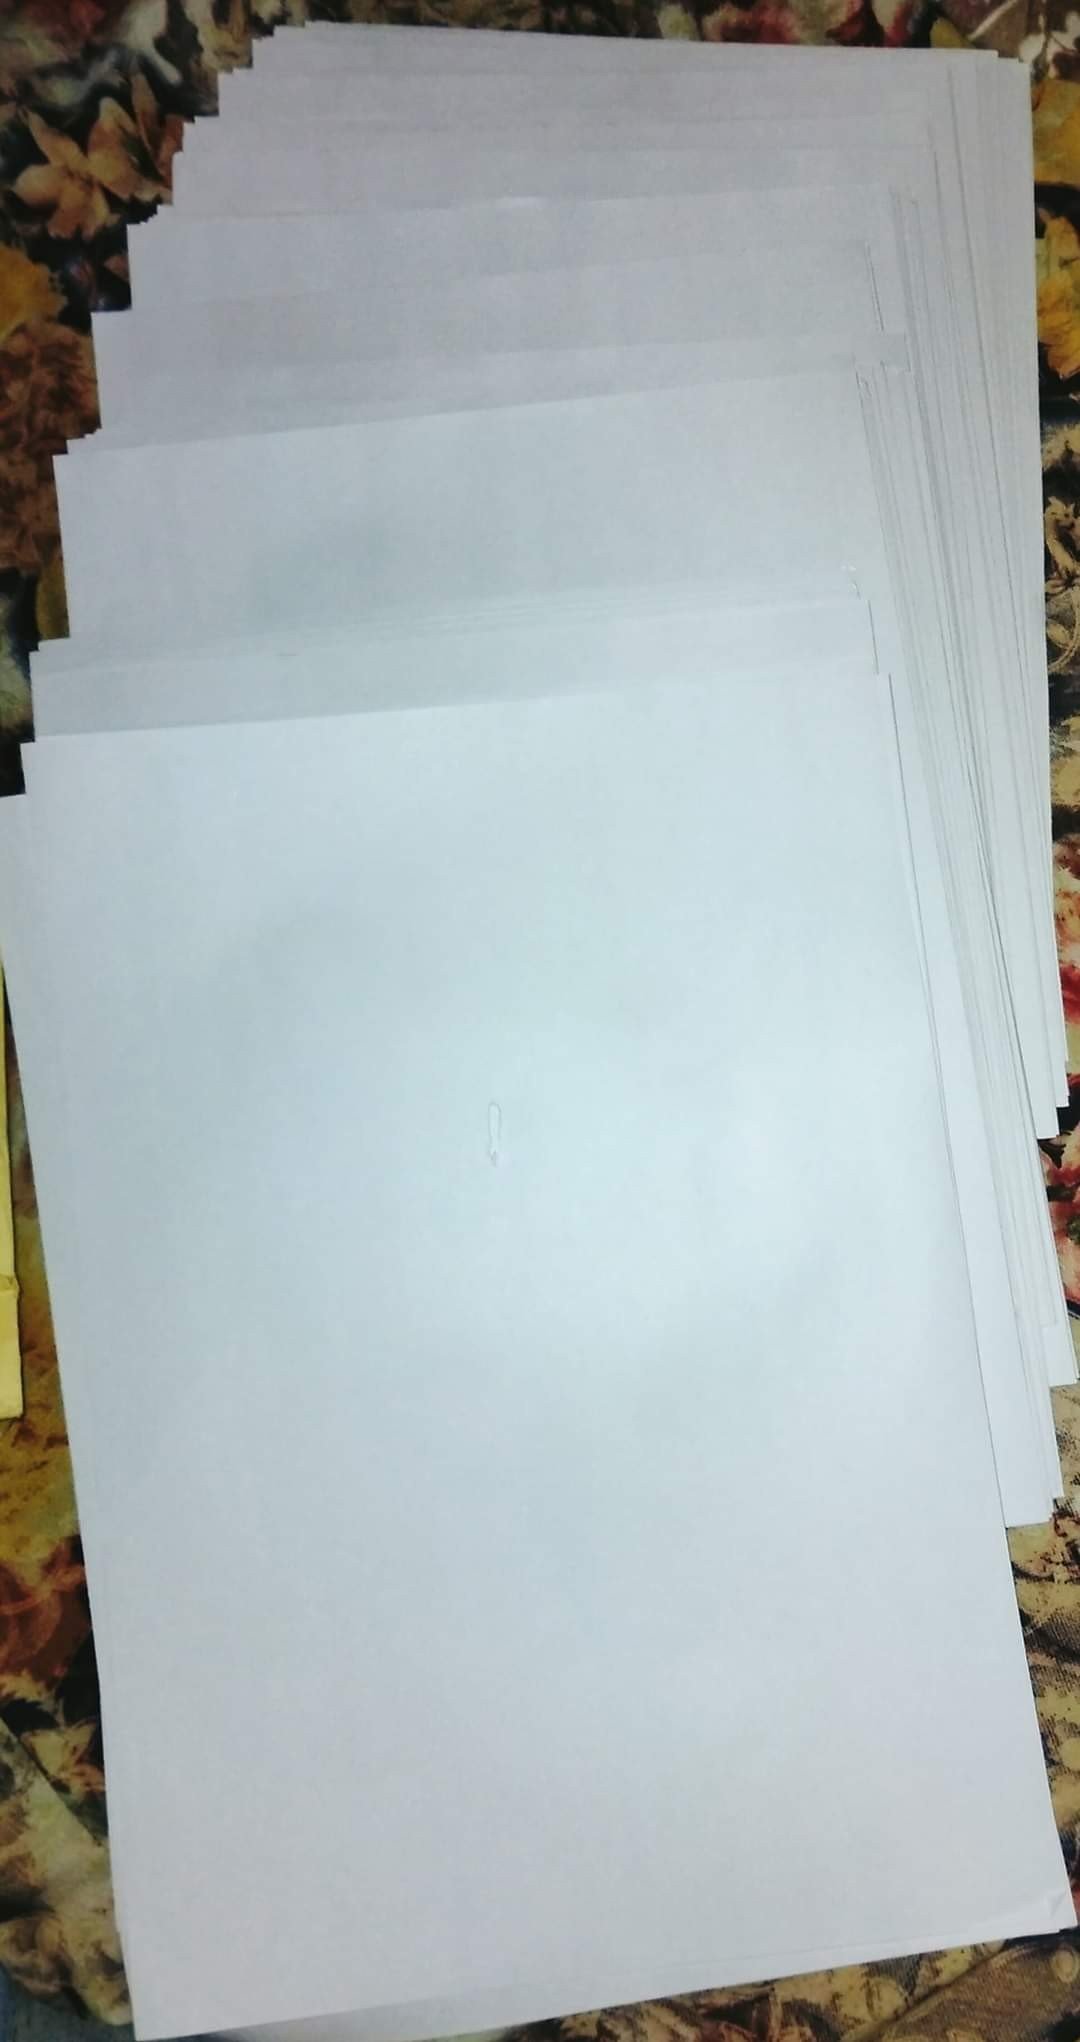 RTi के जवाब में बंधौली  पंचायत ने भेजा लिफाफा ,अंदर निकले A4 साइज के 202 खाली पेज, 16/10/2020 को लगाई गई थी Rti , सेकेंड अपील के बाद खाली पन्नो के साथ मिला rti कार्यकर्ता को पंचायत का जवाब !